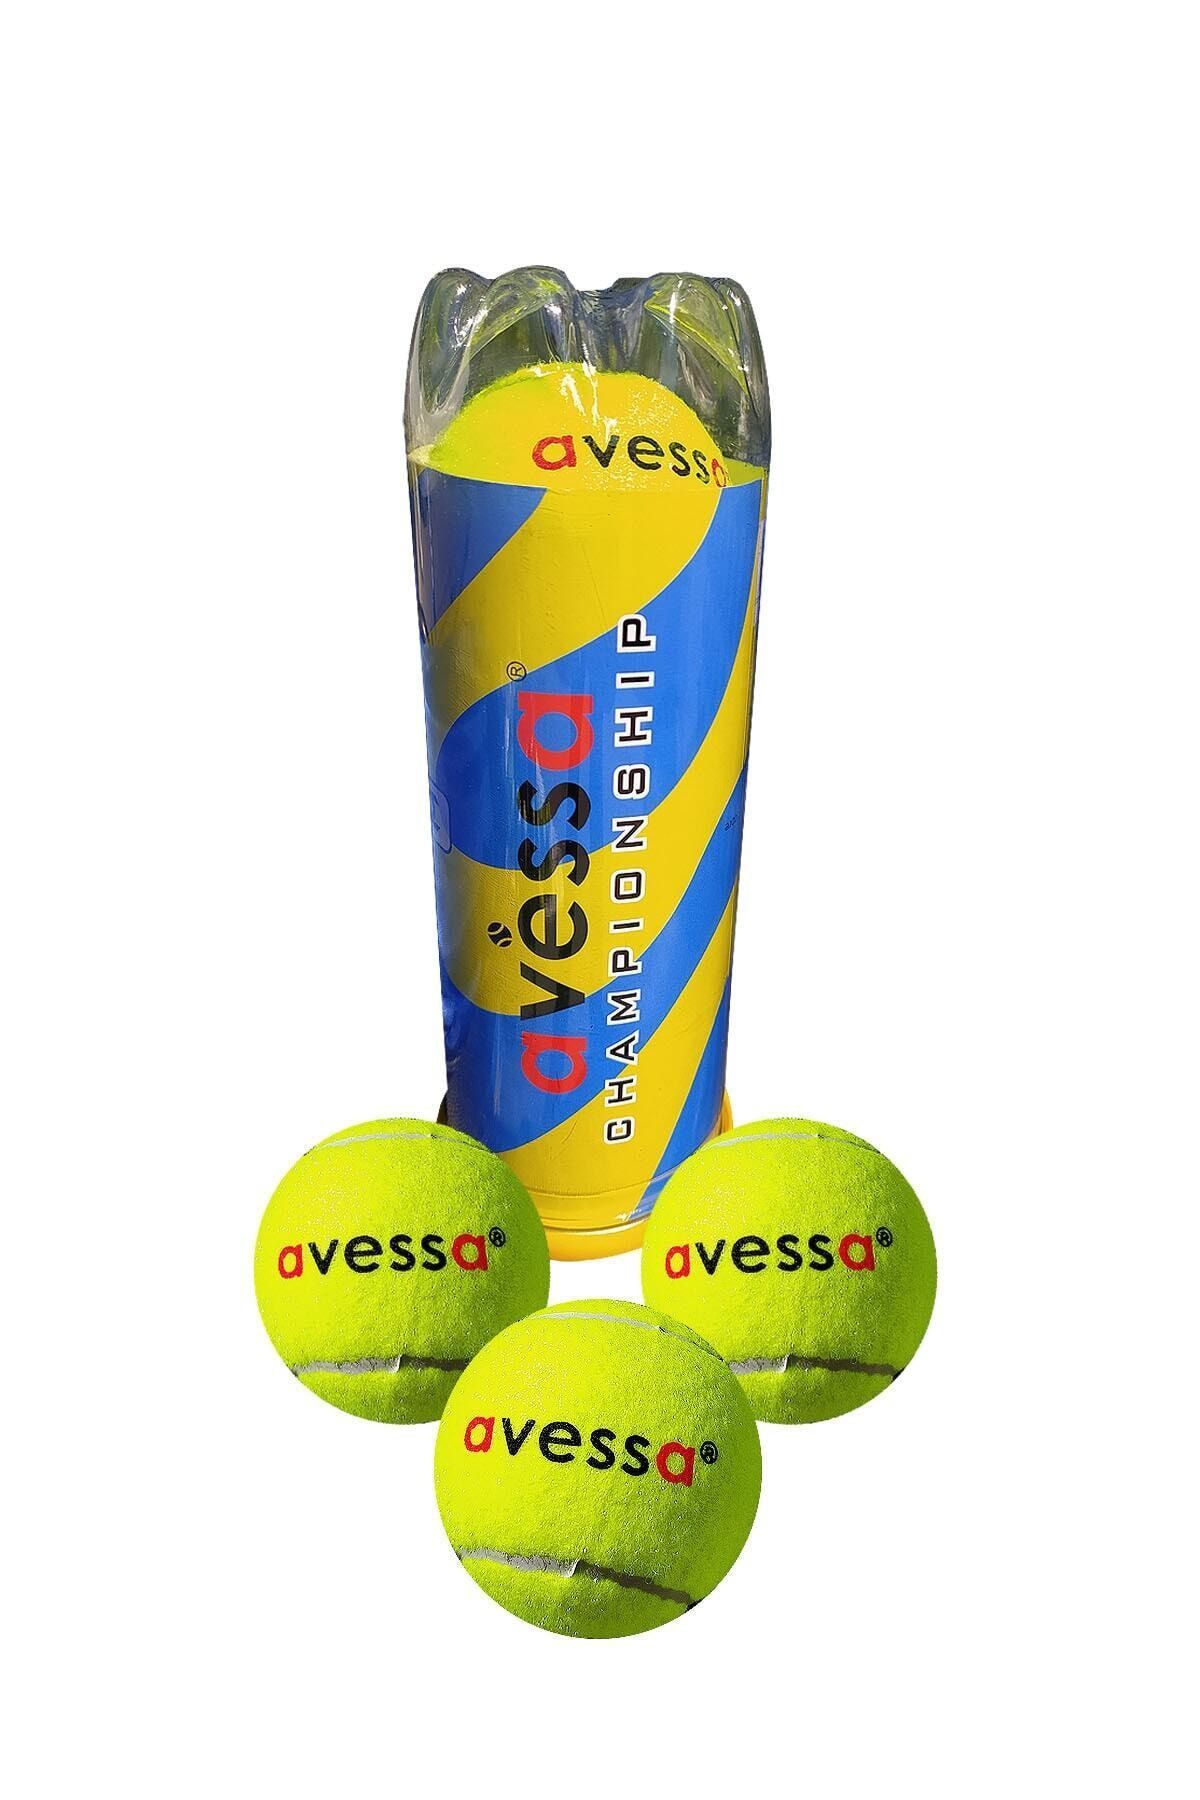 Avessa Antrenman Tenis Topu 3 lü Sarı Tt-500